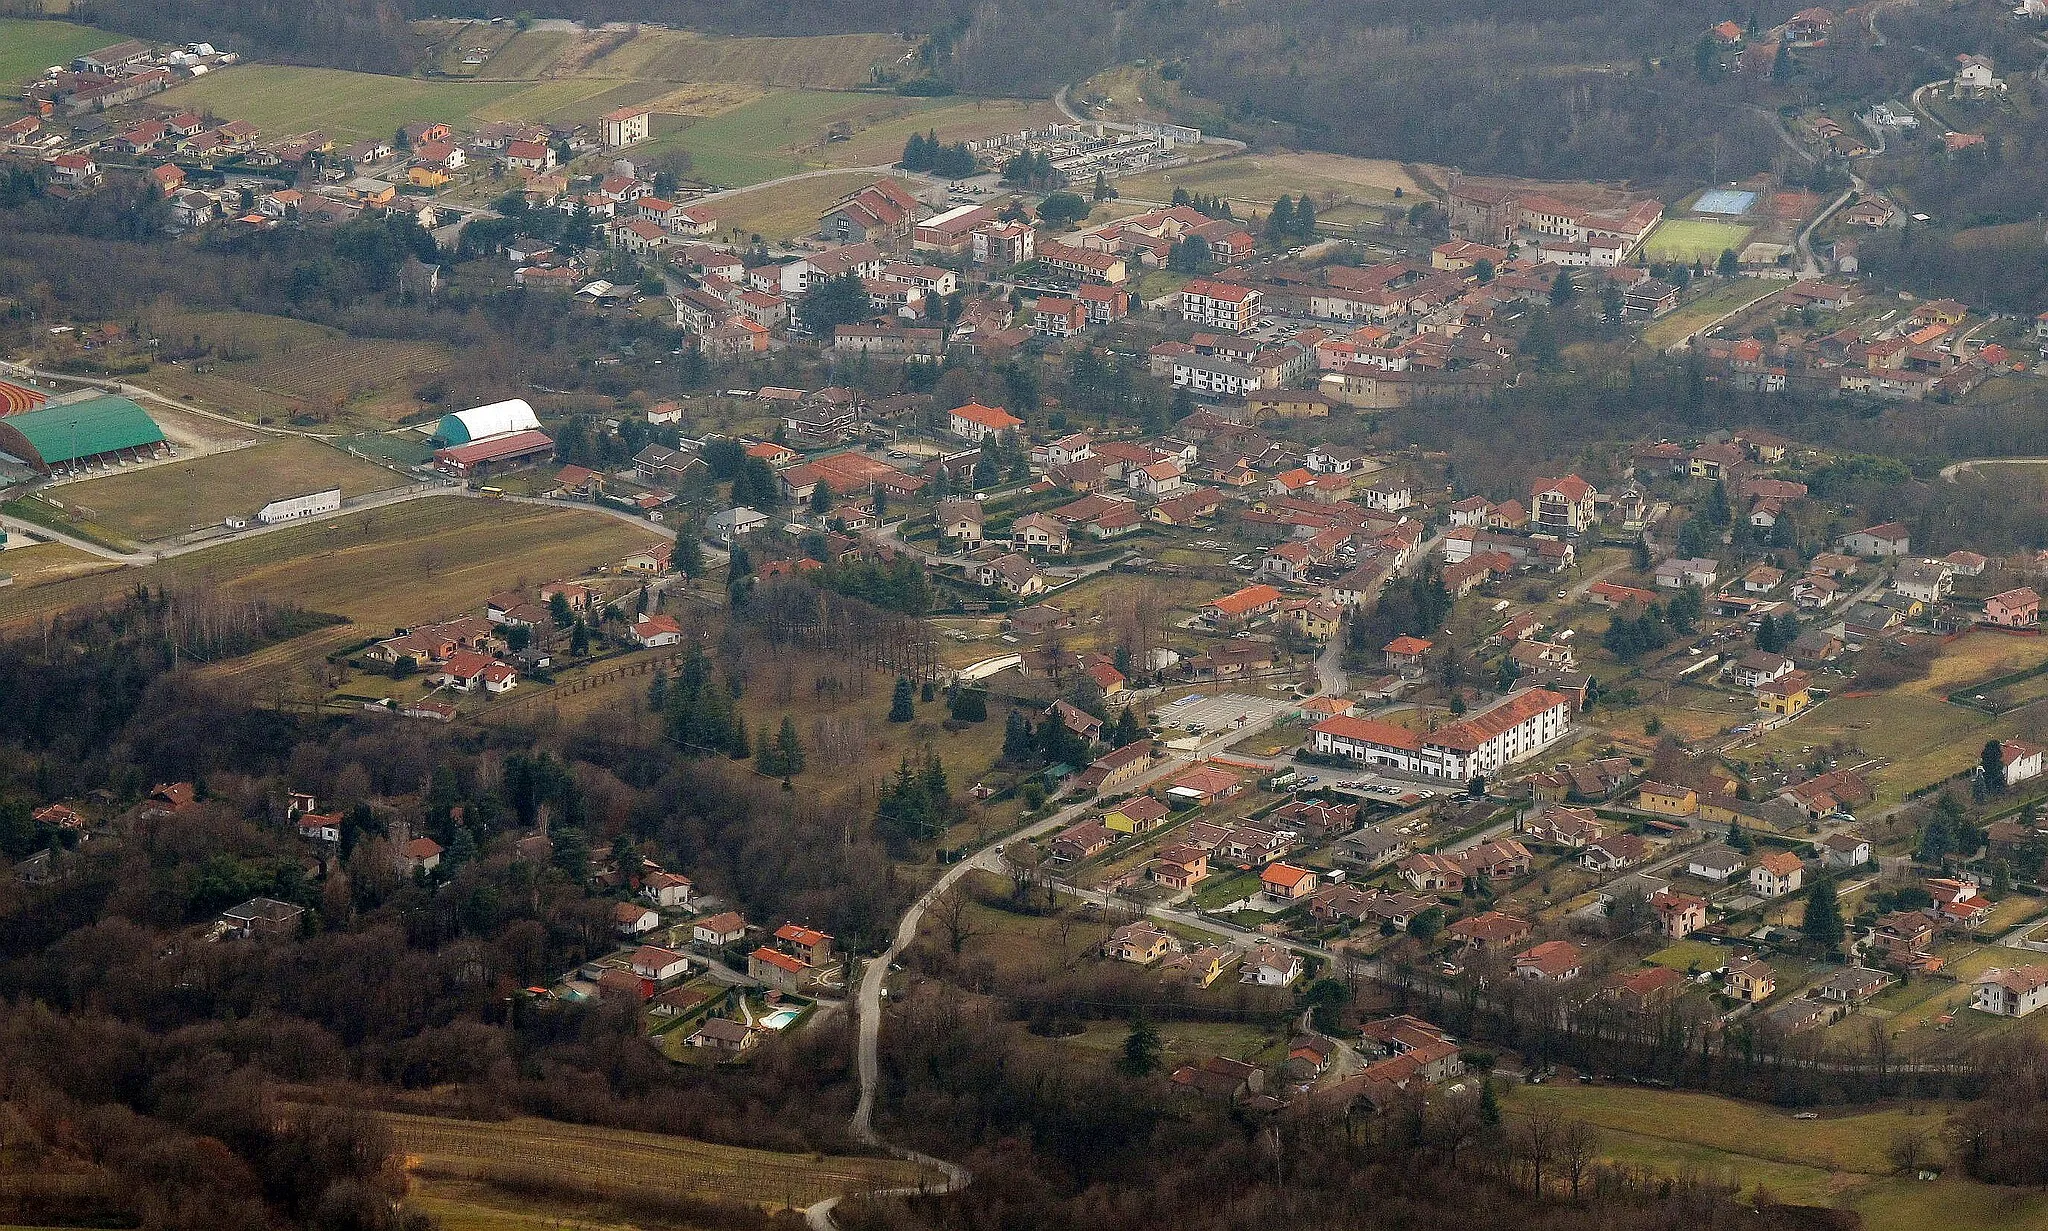 Imagen de Piemonte